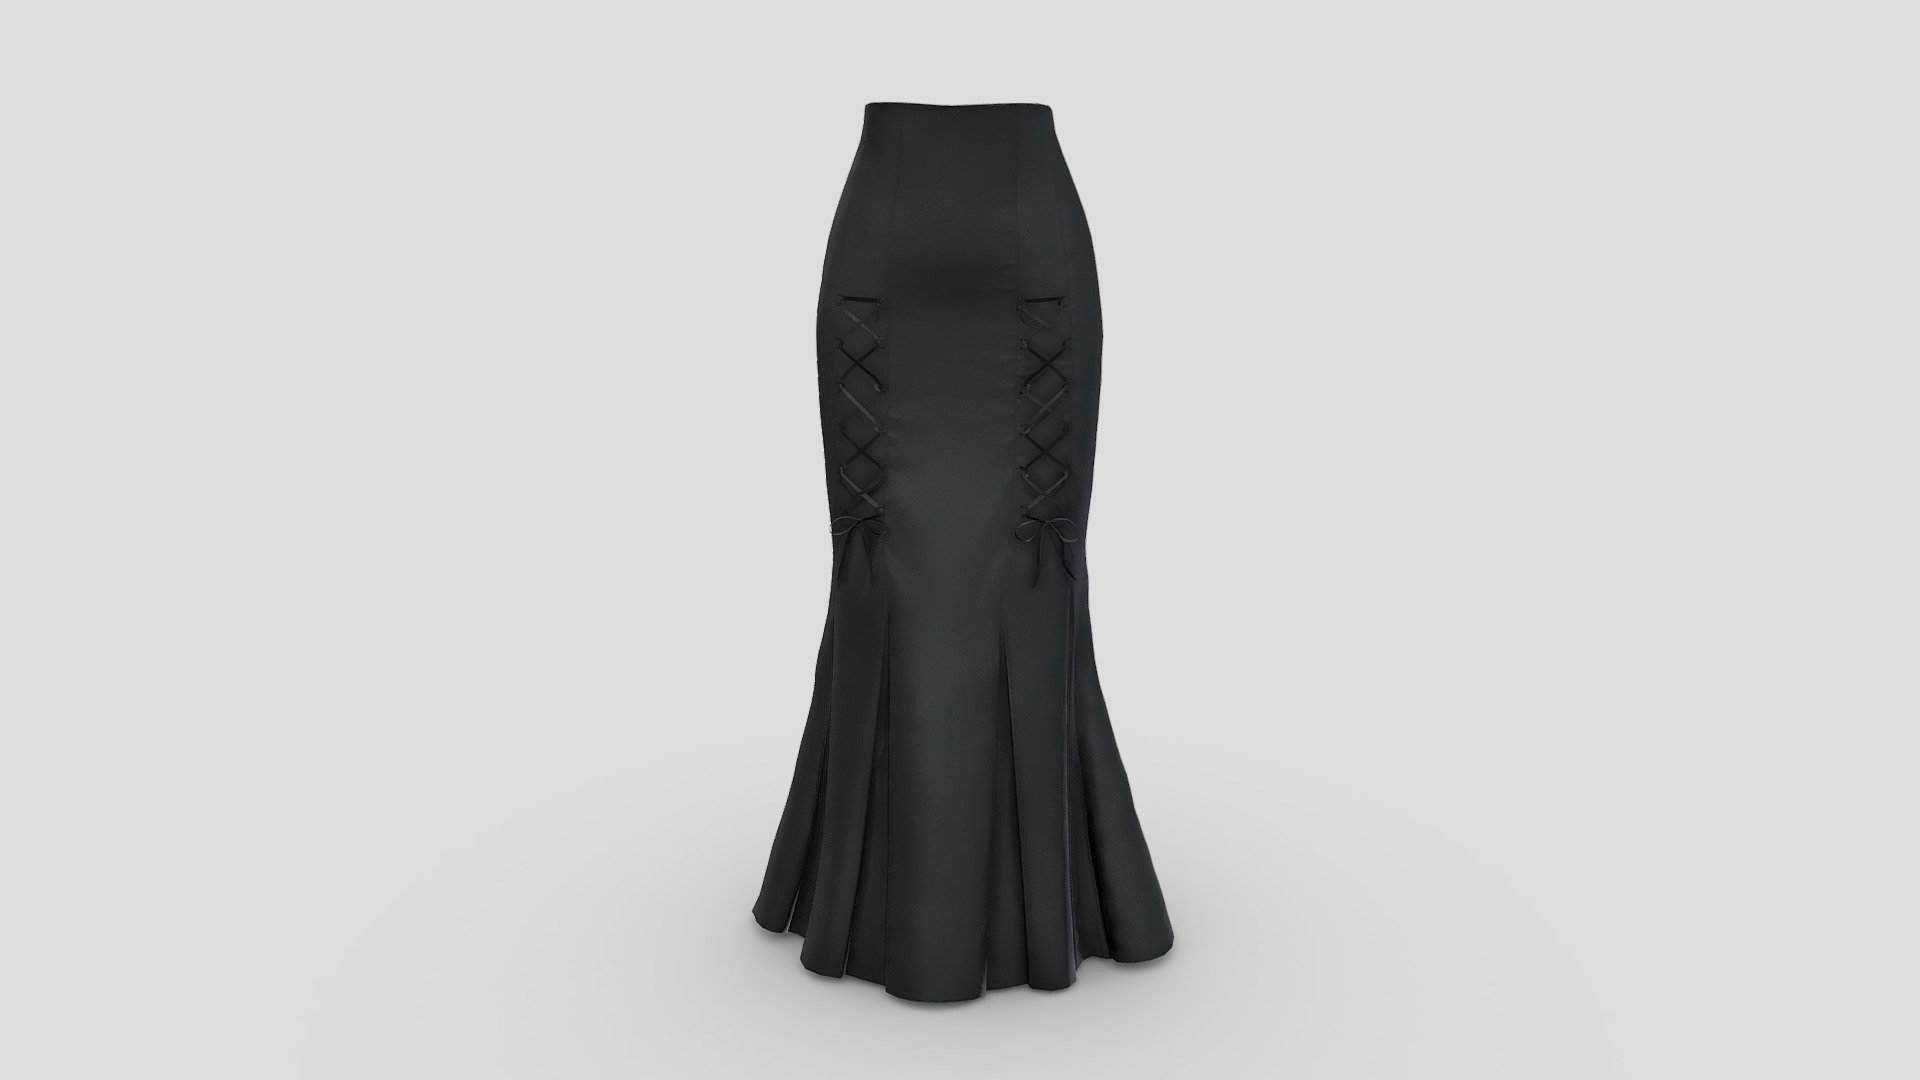 Female Long Black Victorian Mermaid Skirt - Buy Royalty Free 3D model ...